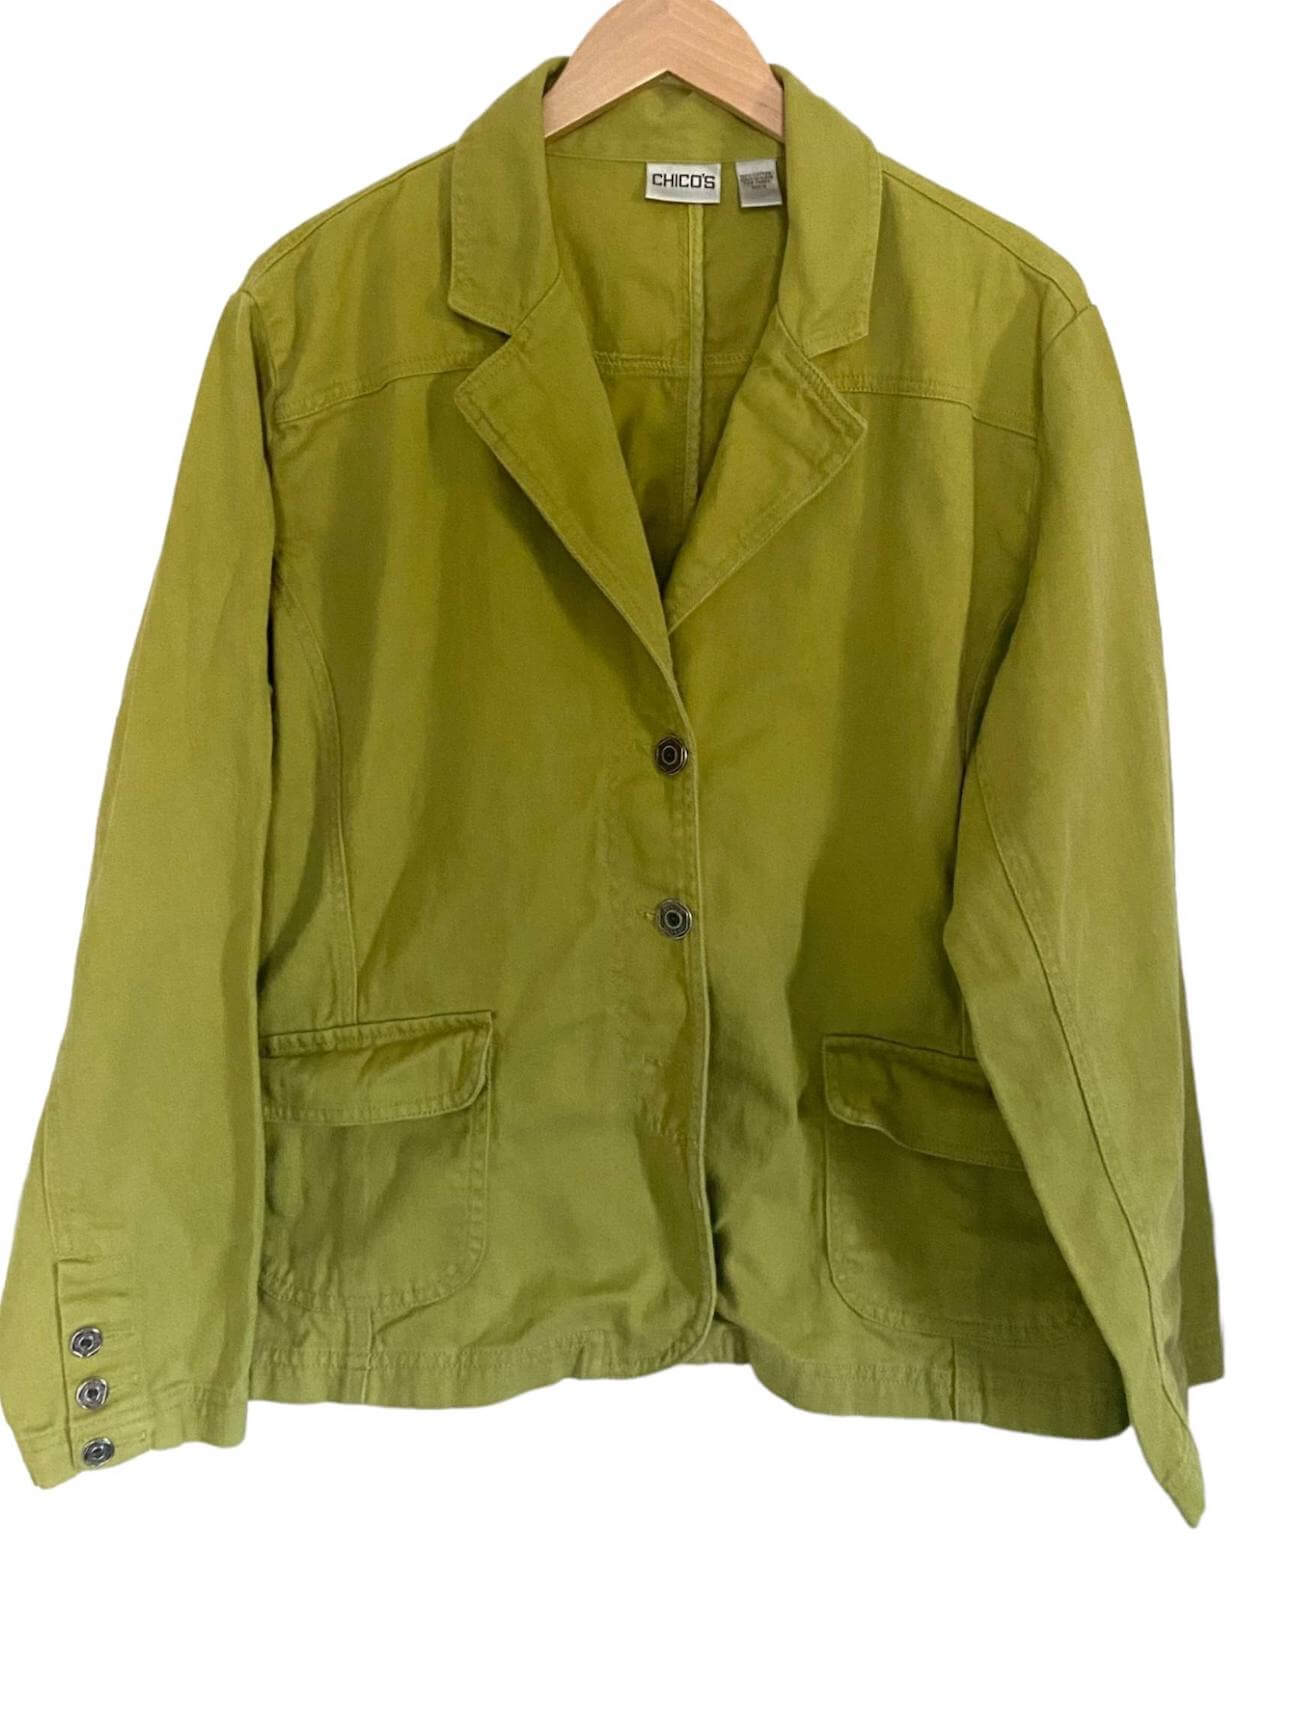 Warm Autumn CHICO'S green denim blazer